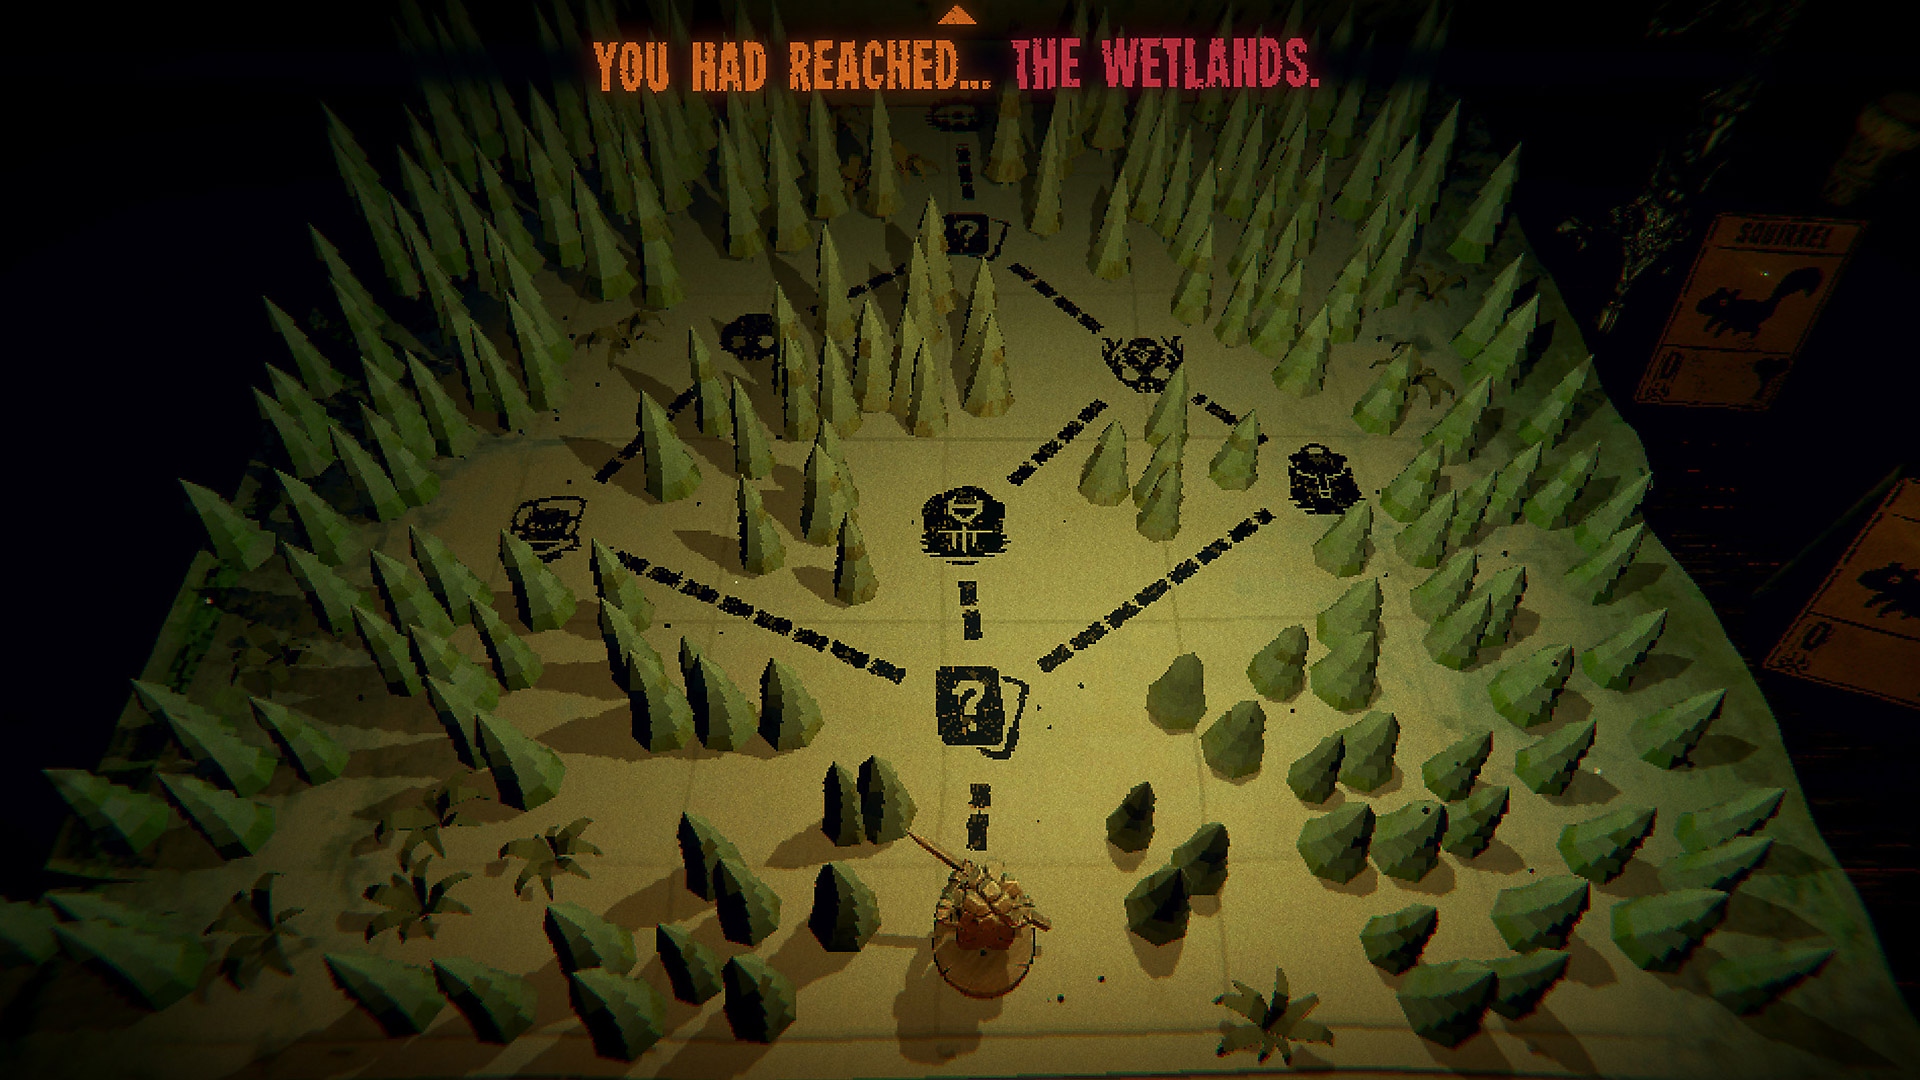 لقطة شاشة للعبة Inscryption تعرض خريطة لمنطقة مشجرة بمسارات متعددة بين الأشجار.